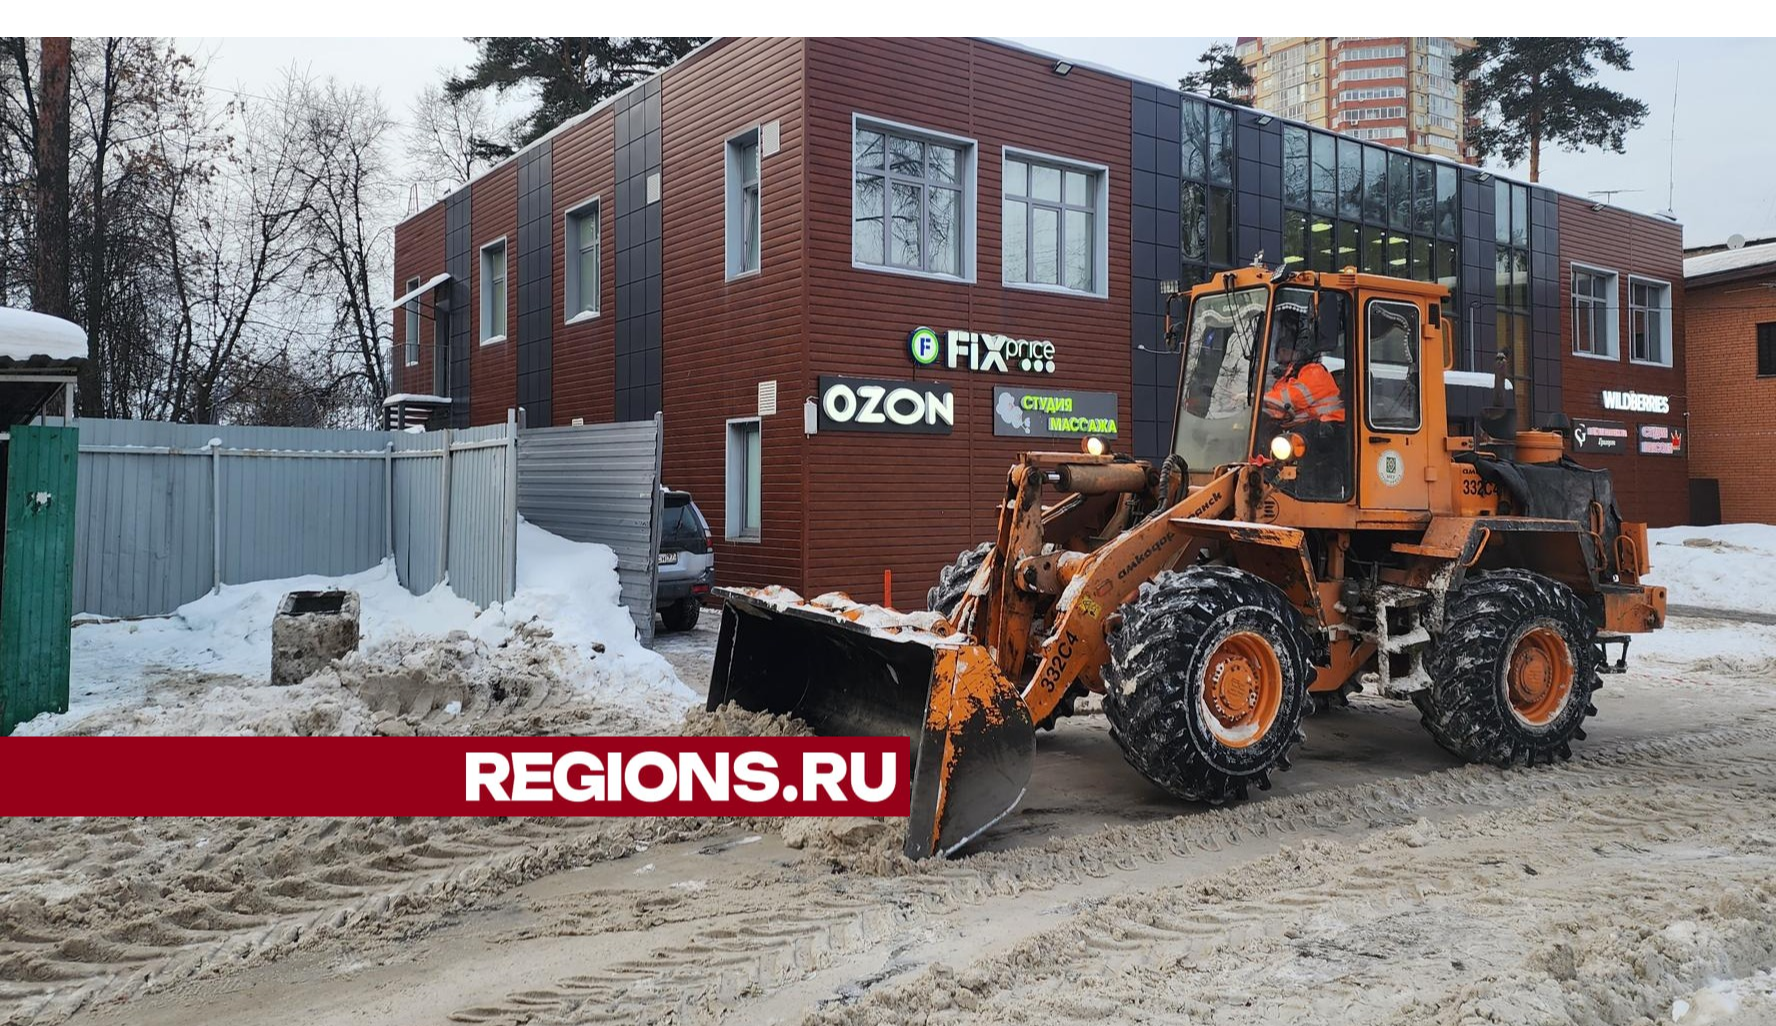 В Пушкино коммунальные службы убрали снег на улице Добролюбова